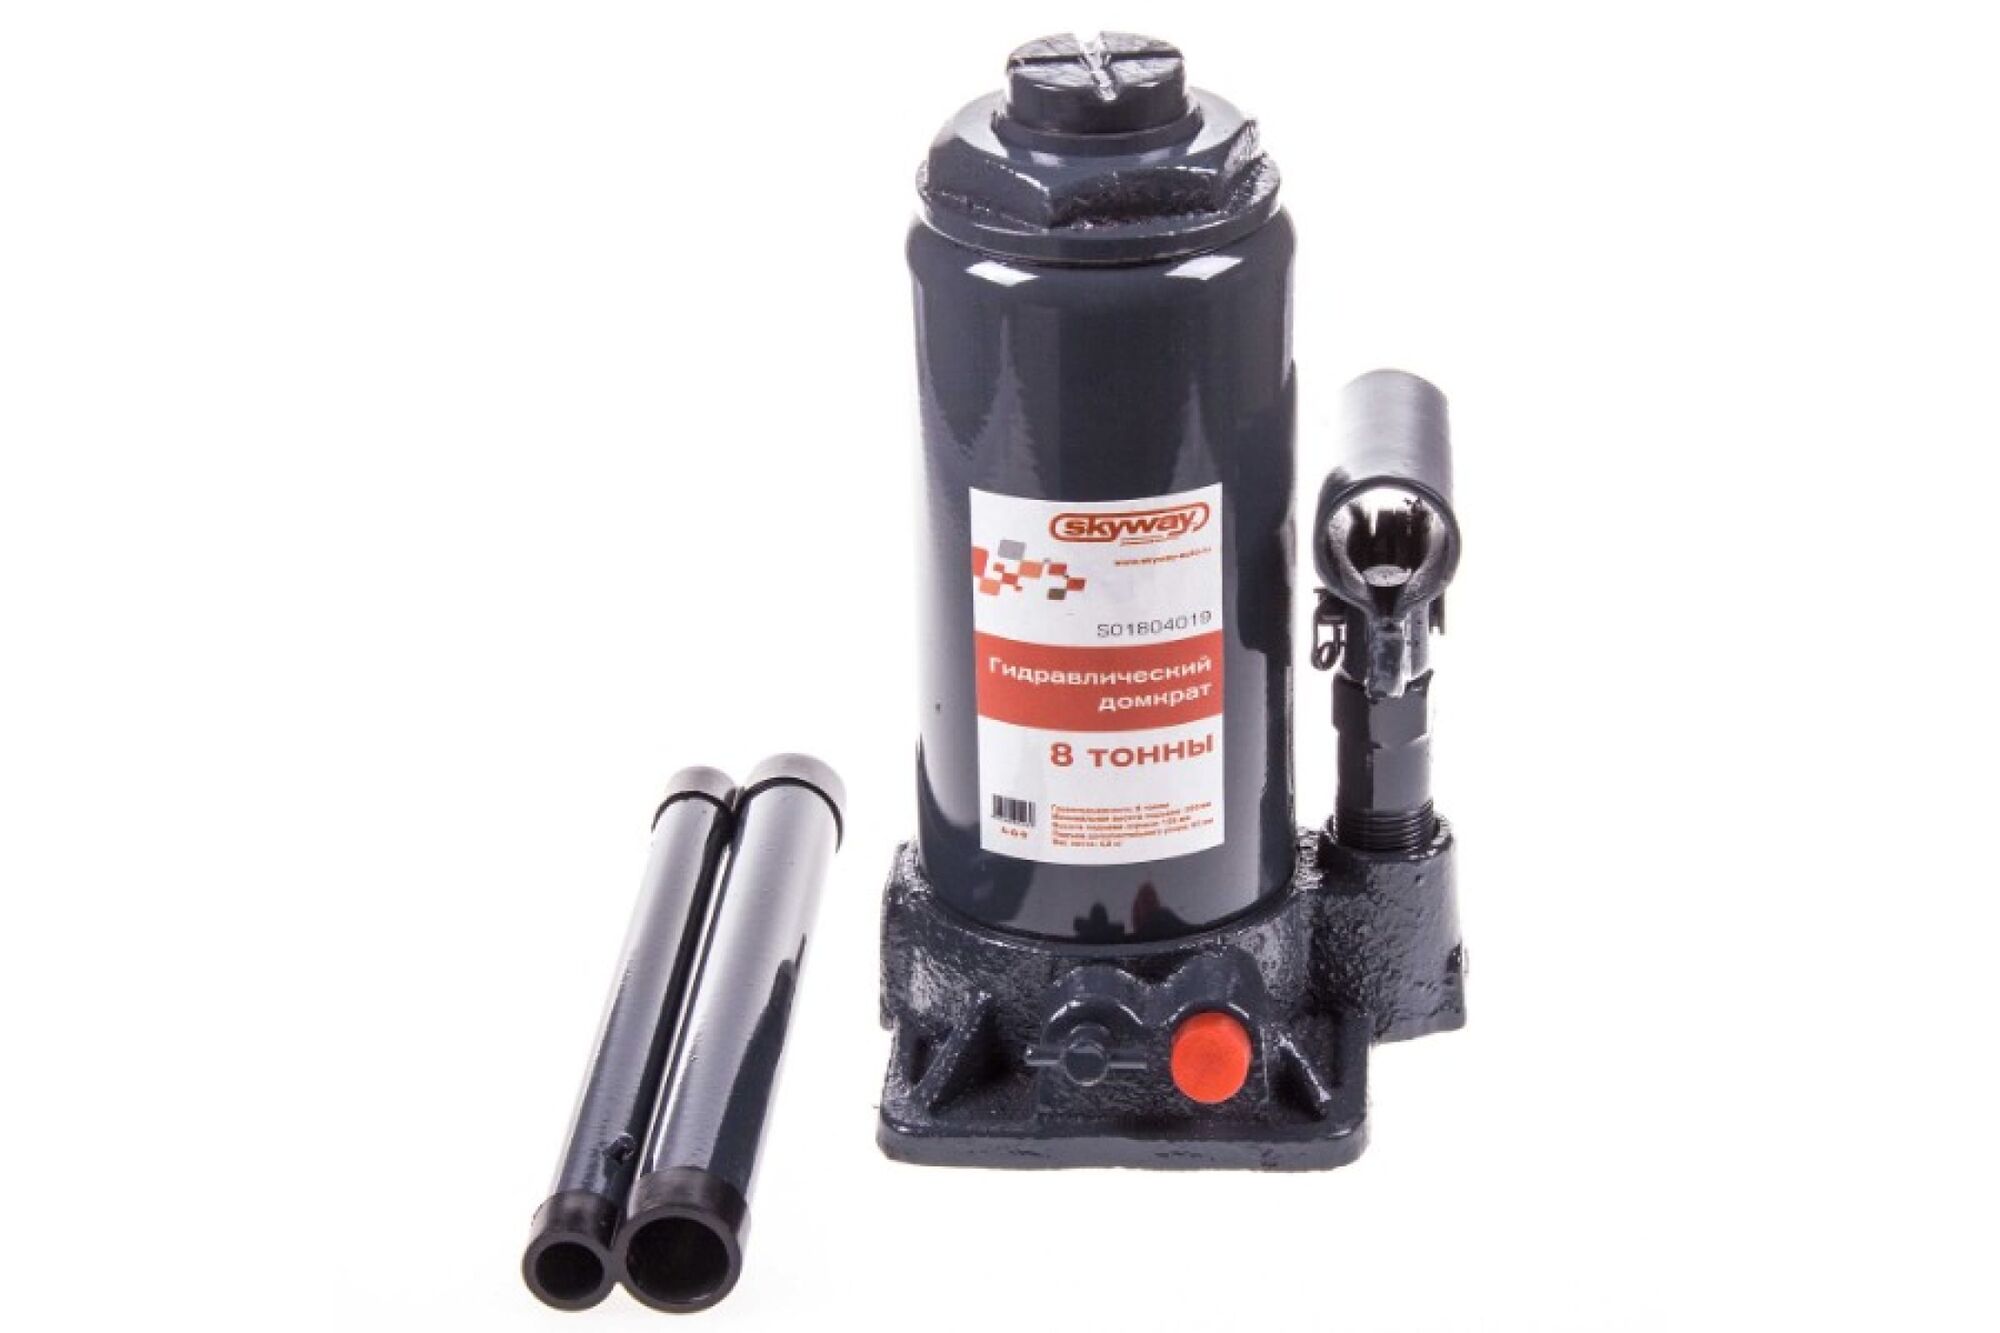 Гидравлический бутылочный домкрат SKYWAY 8 т h 200-385 мм с клапаном в коробке S01804019